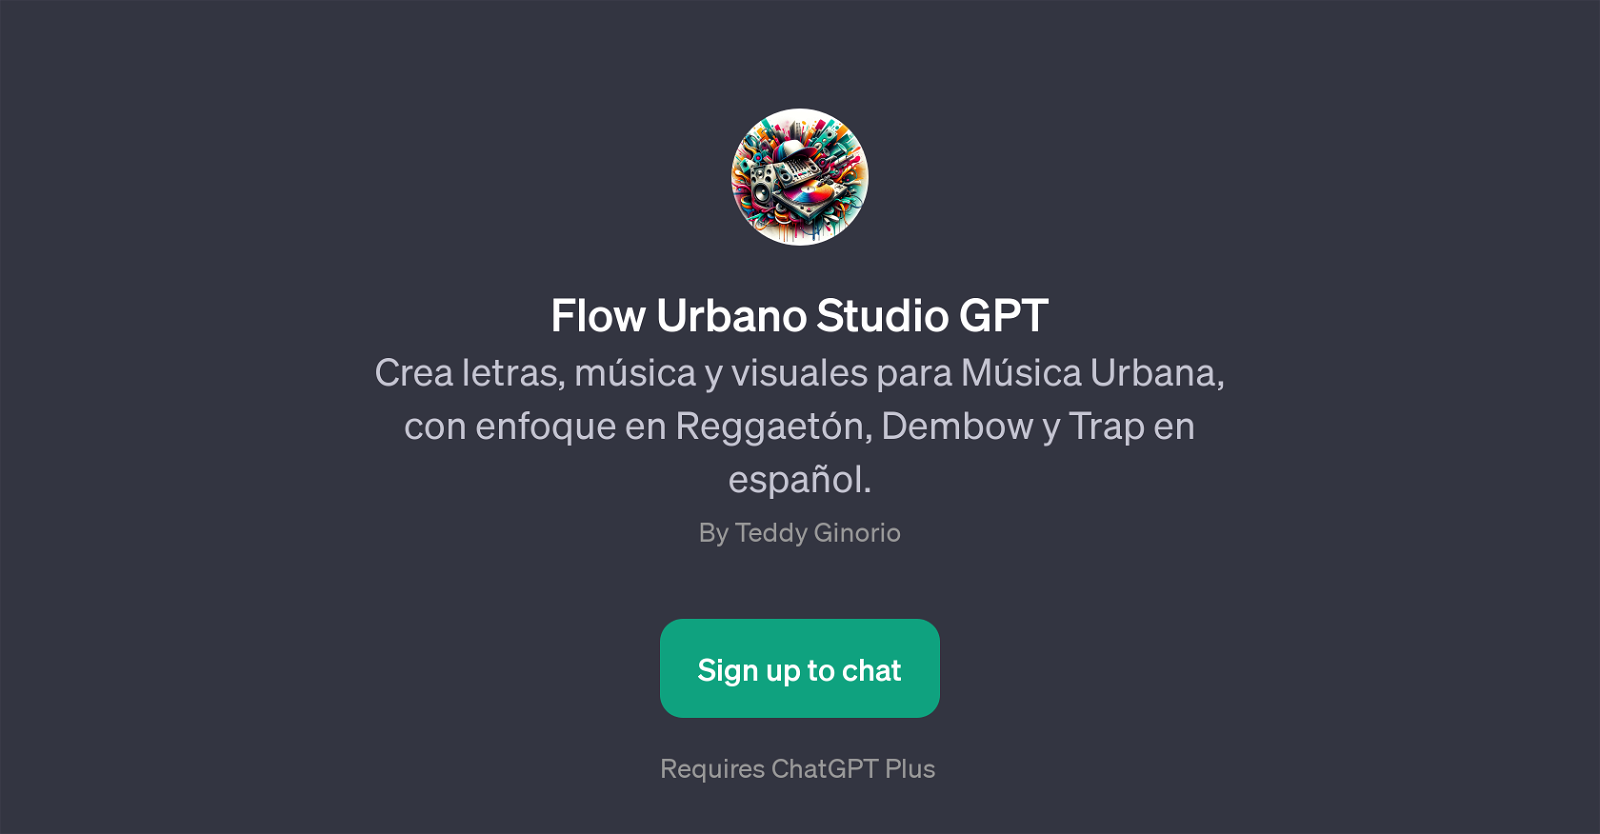 Flow Urbano Studio GPT website